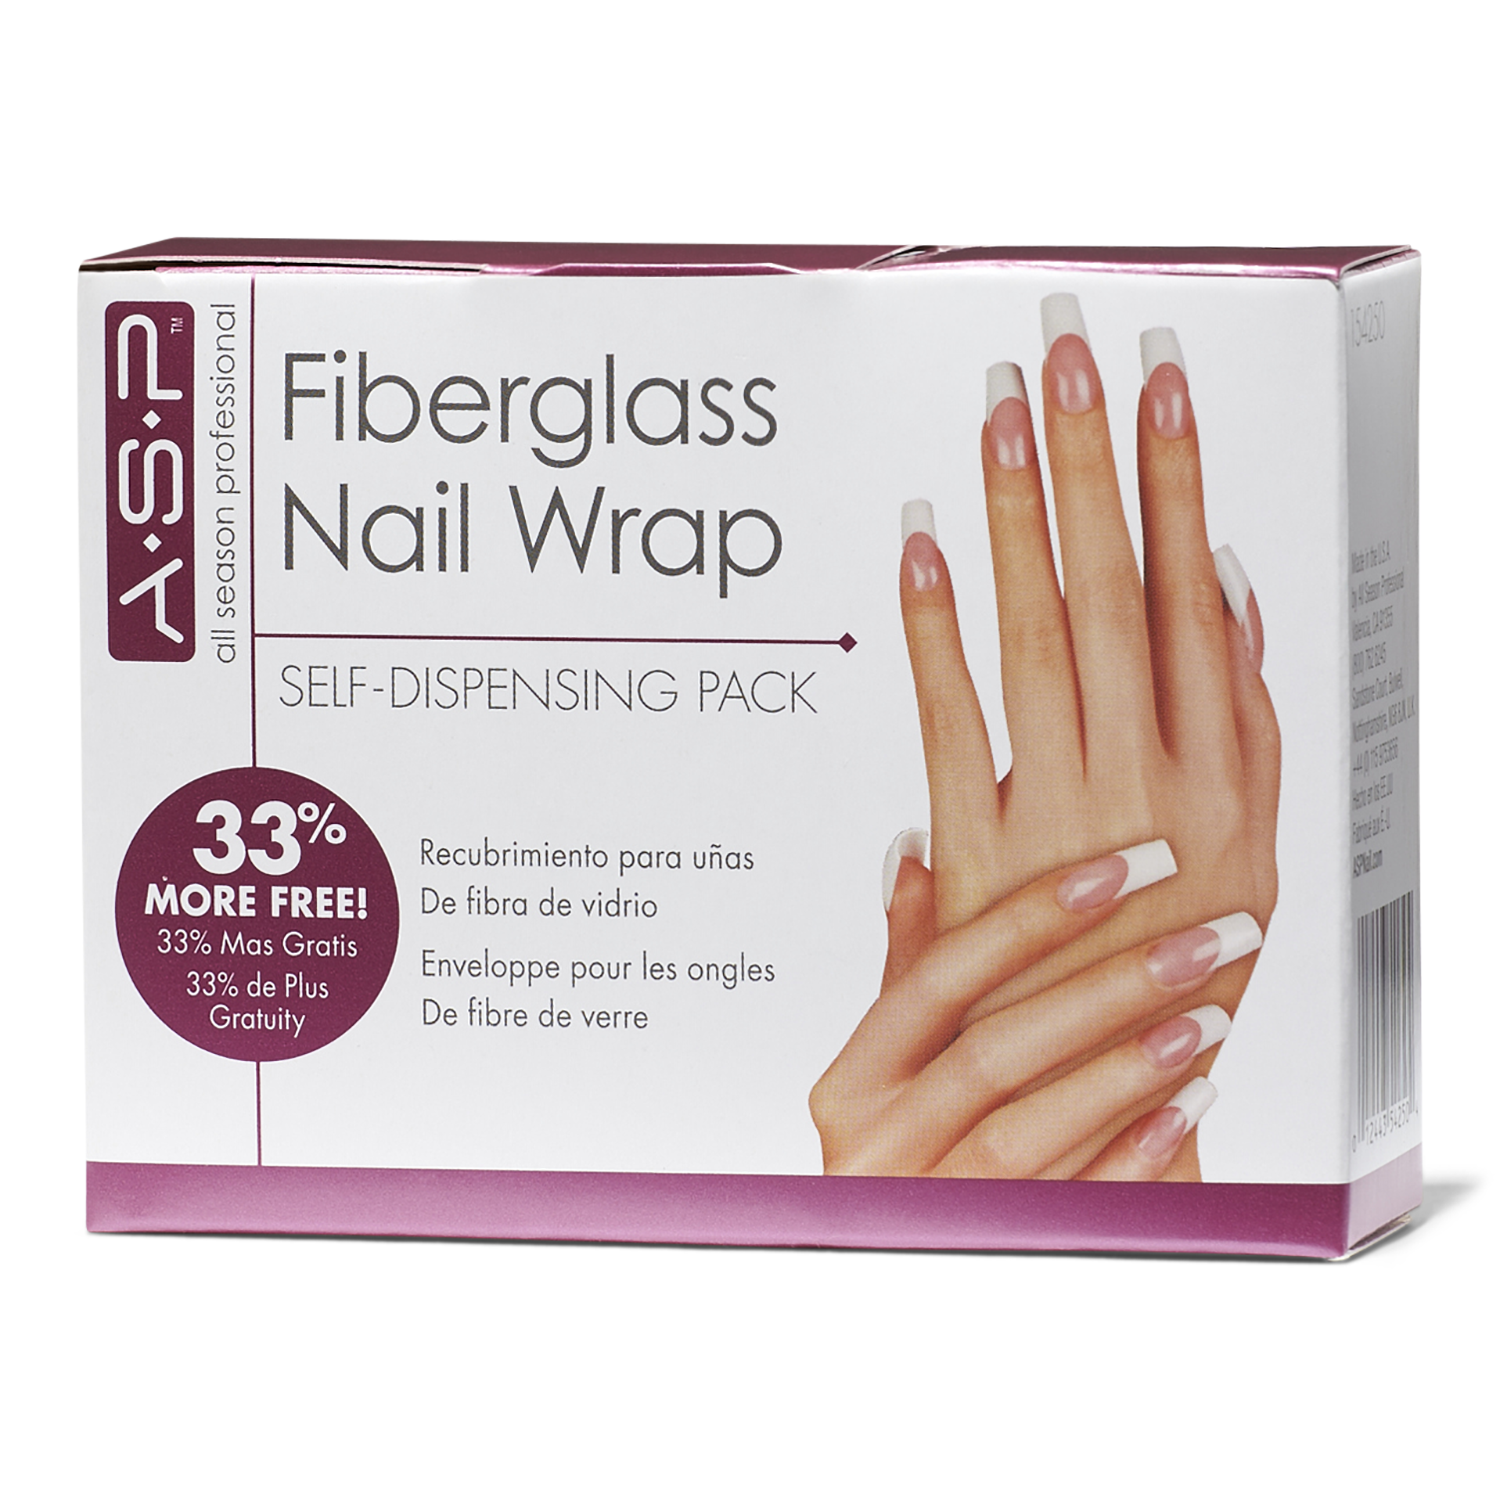 Fiberglass Nail Wrap